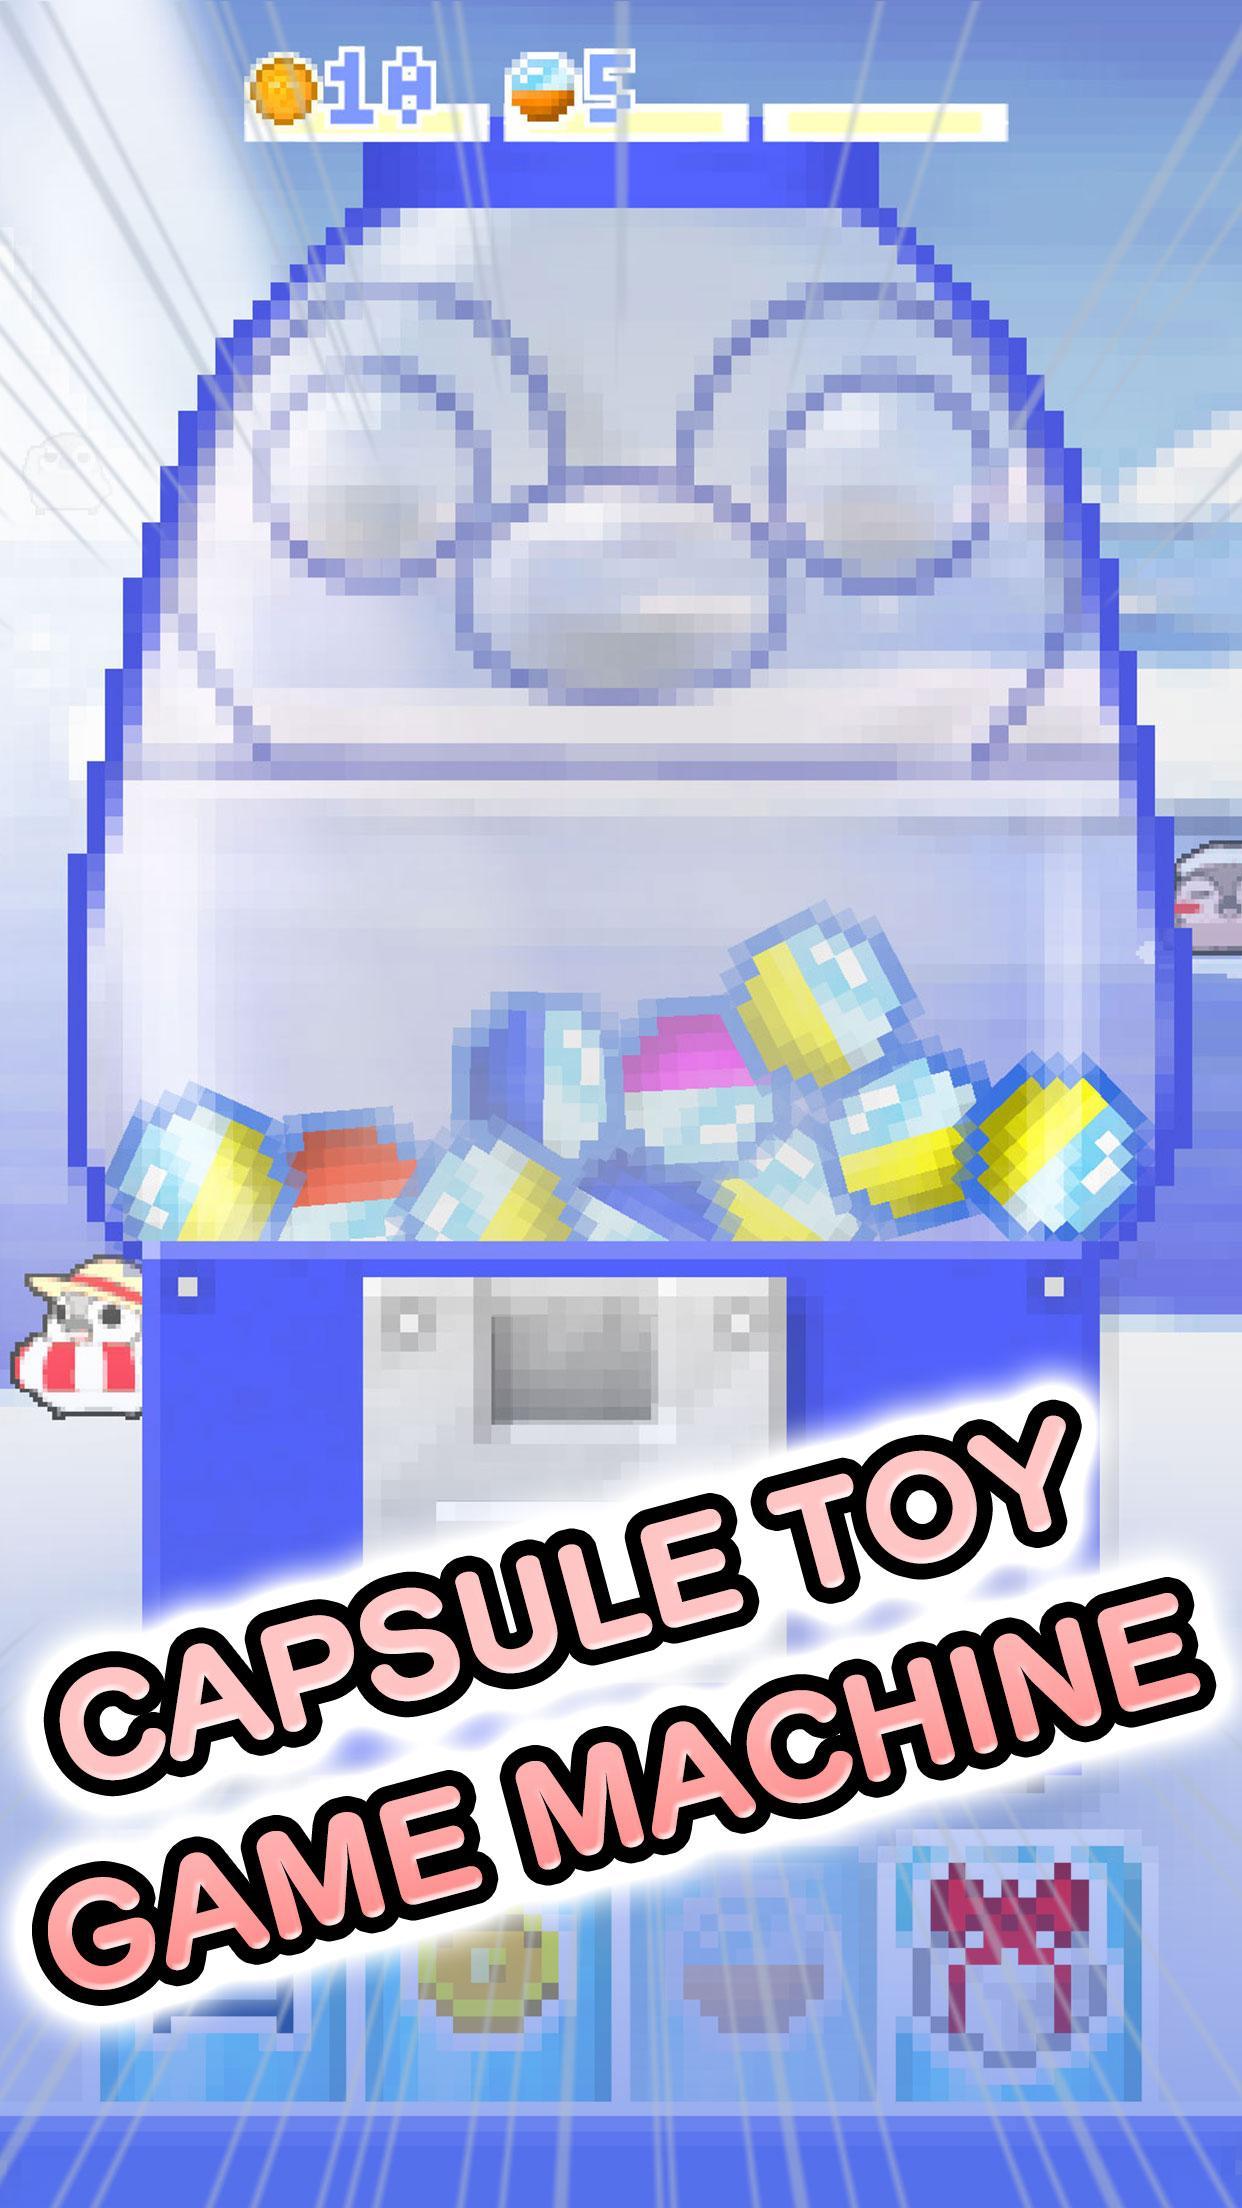 Screenshot of Pesoguin capsule toy game